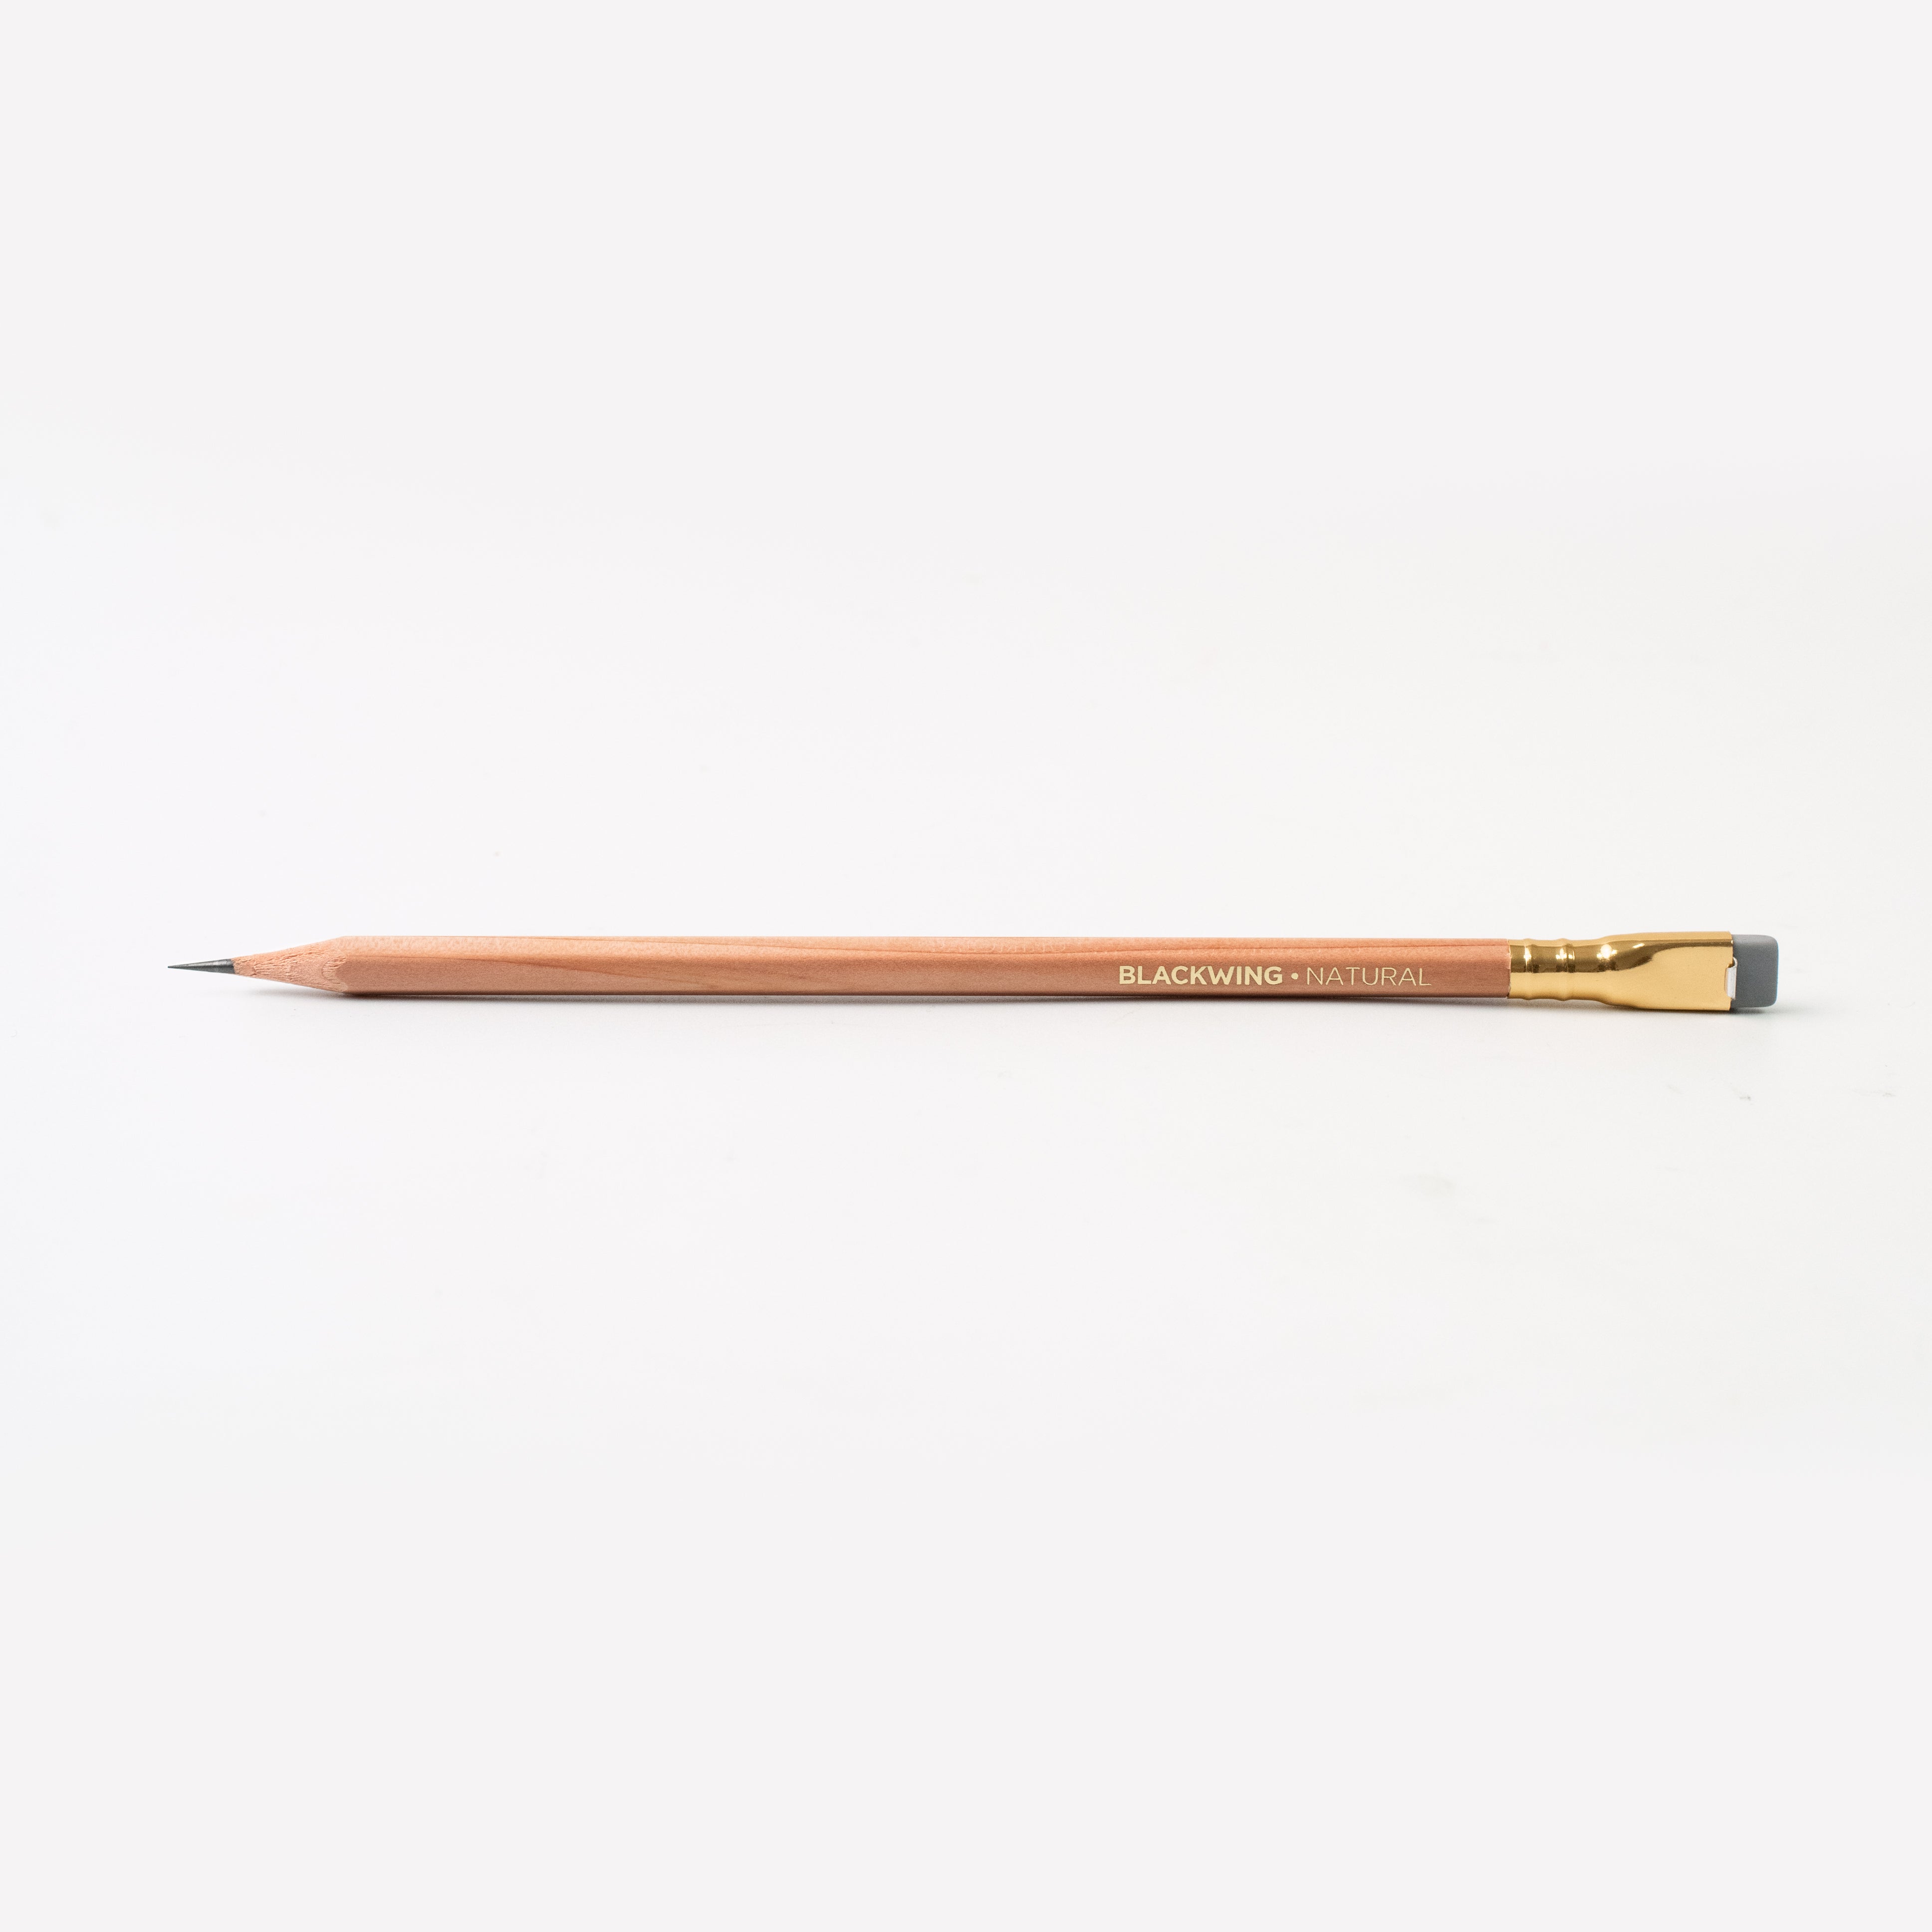 Premium White Pencils, Pack of 12 Personalised Premium Pencils